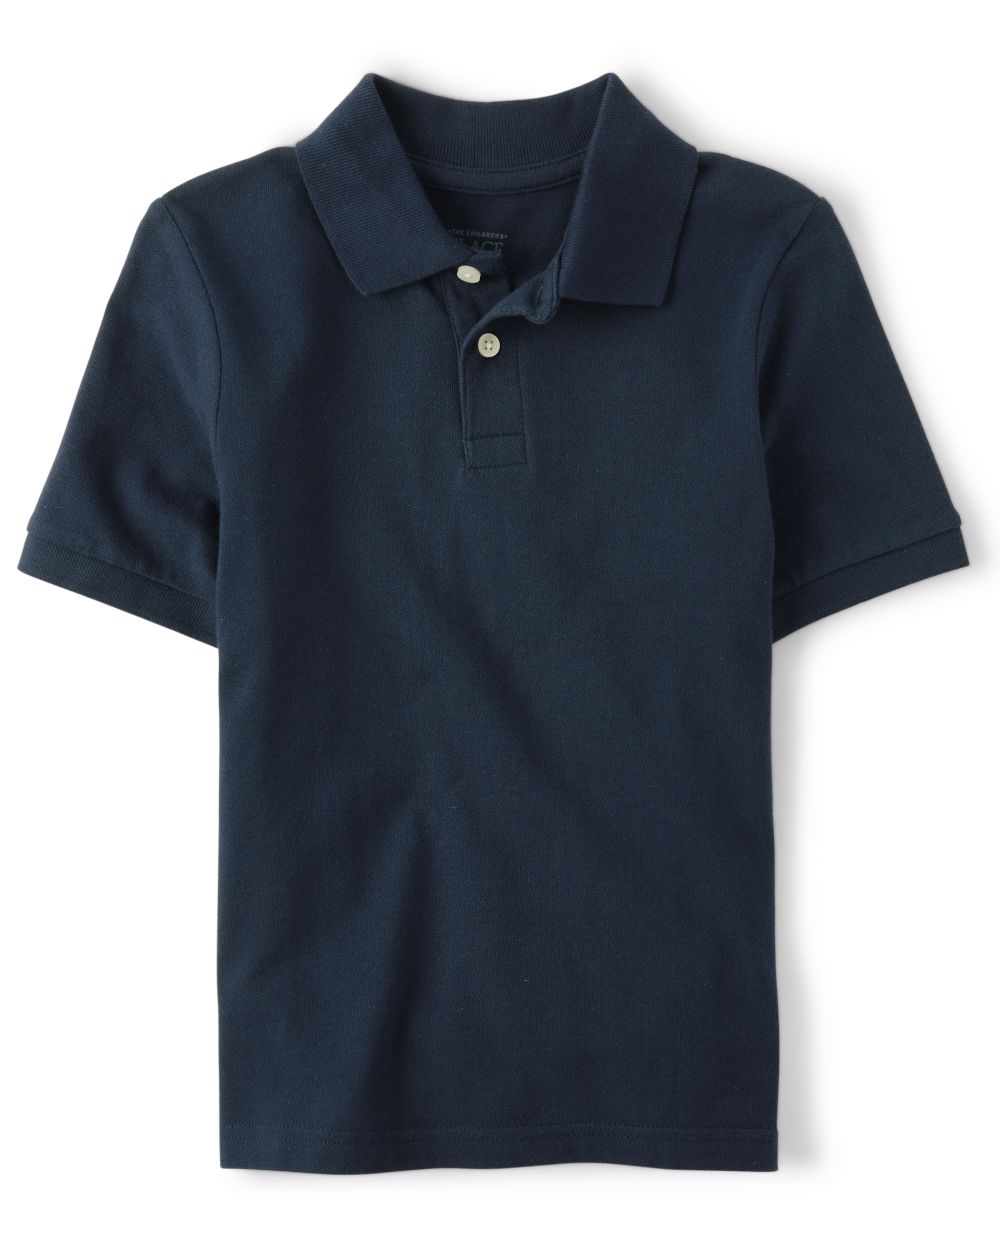 

s Boys Uniform Stain Resistant Stretch Pique Polo - Blue - The Children's Place